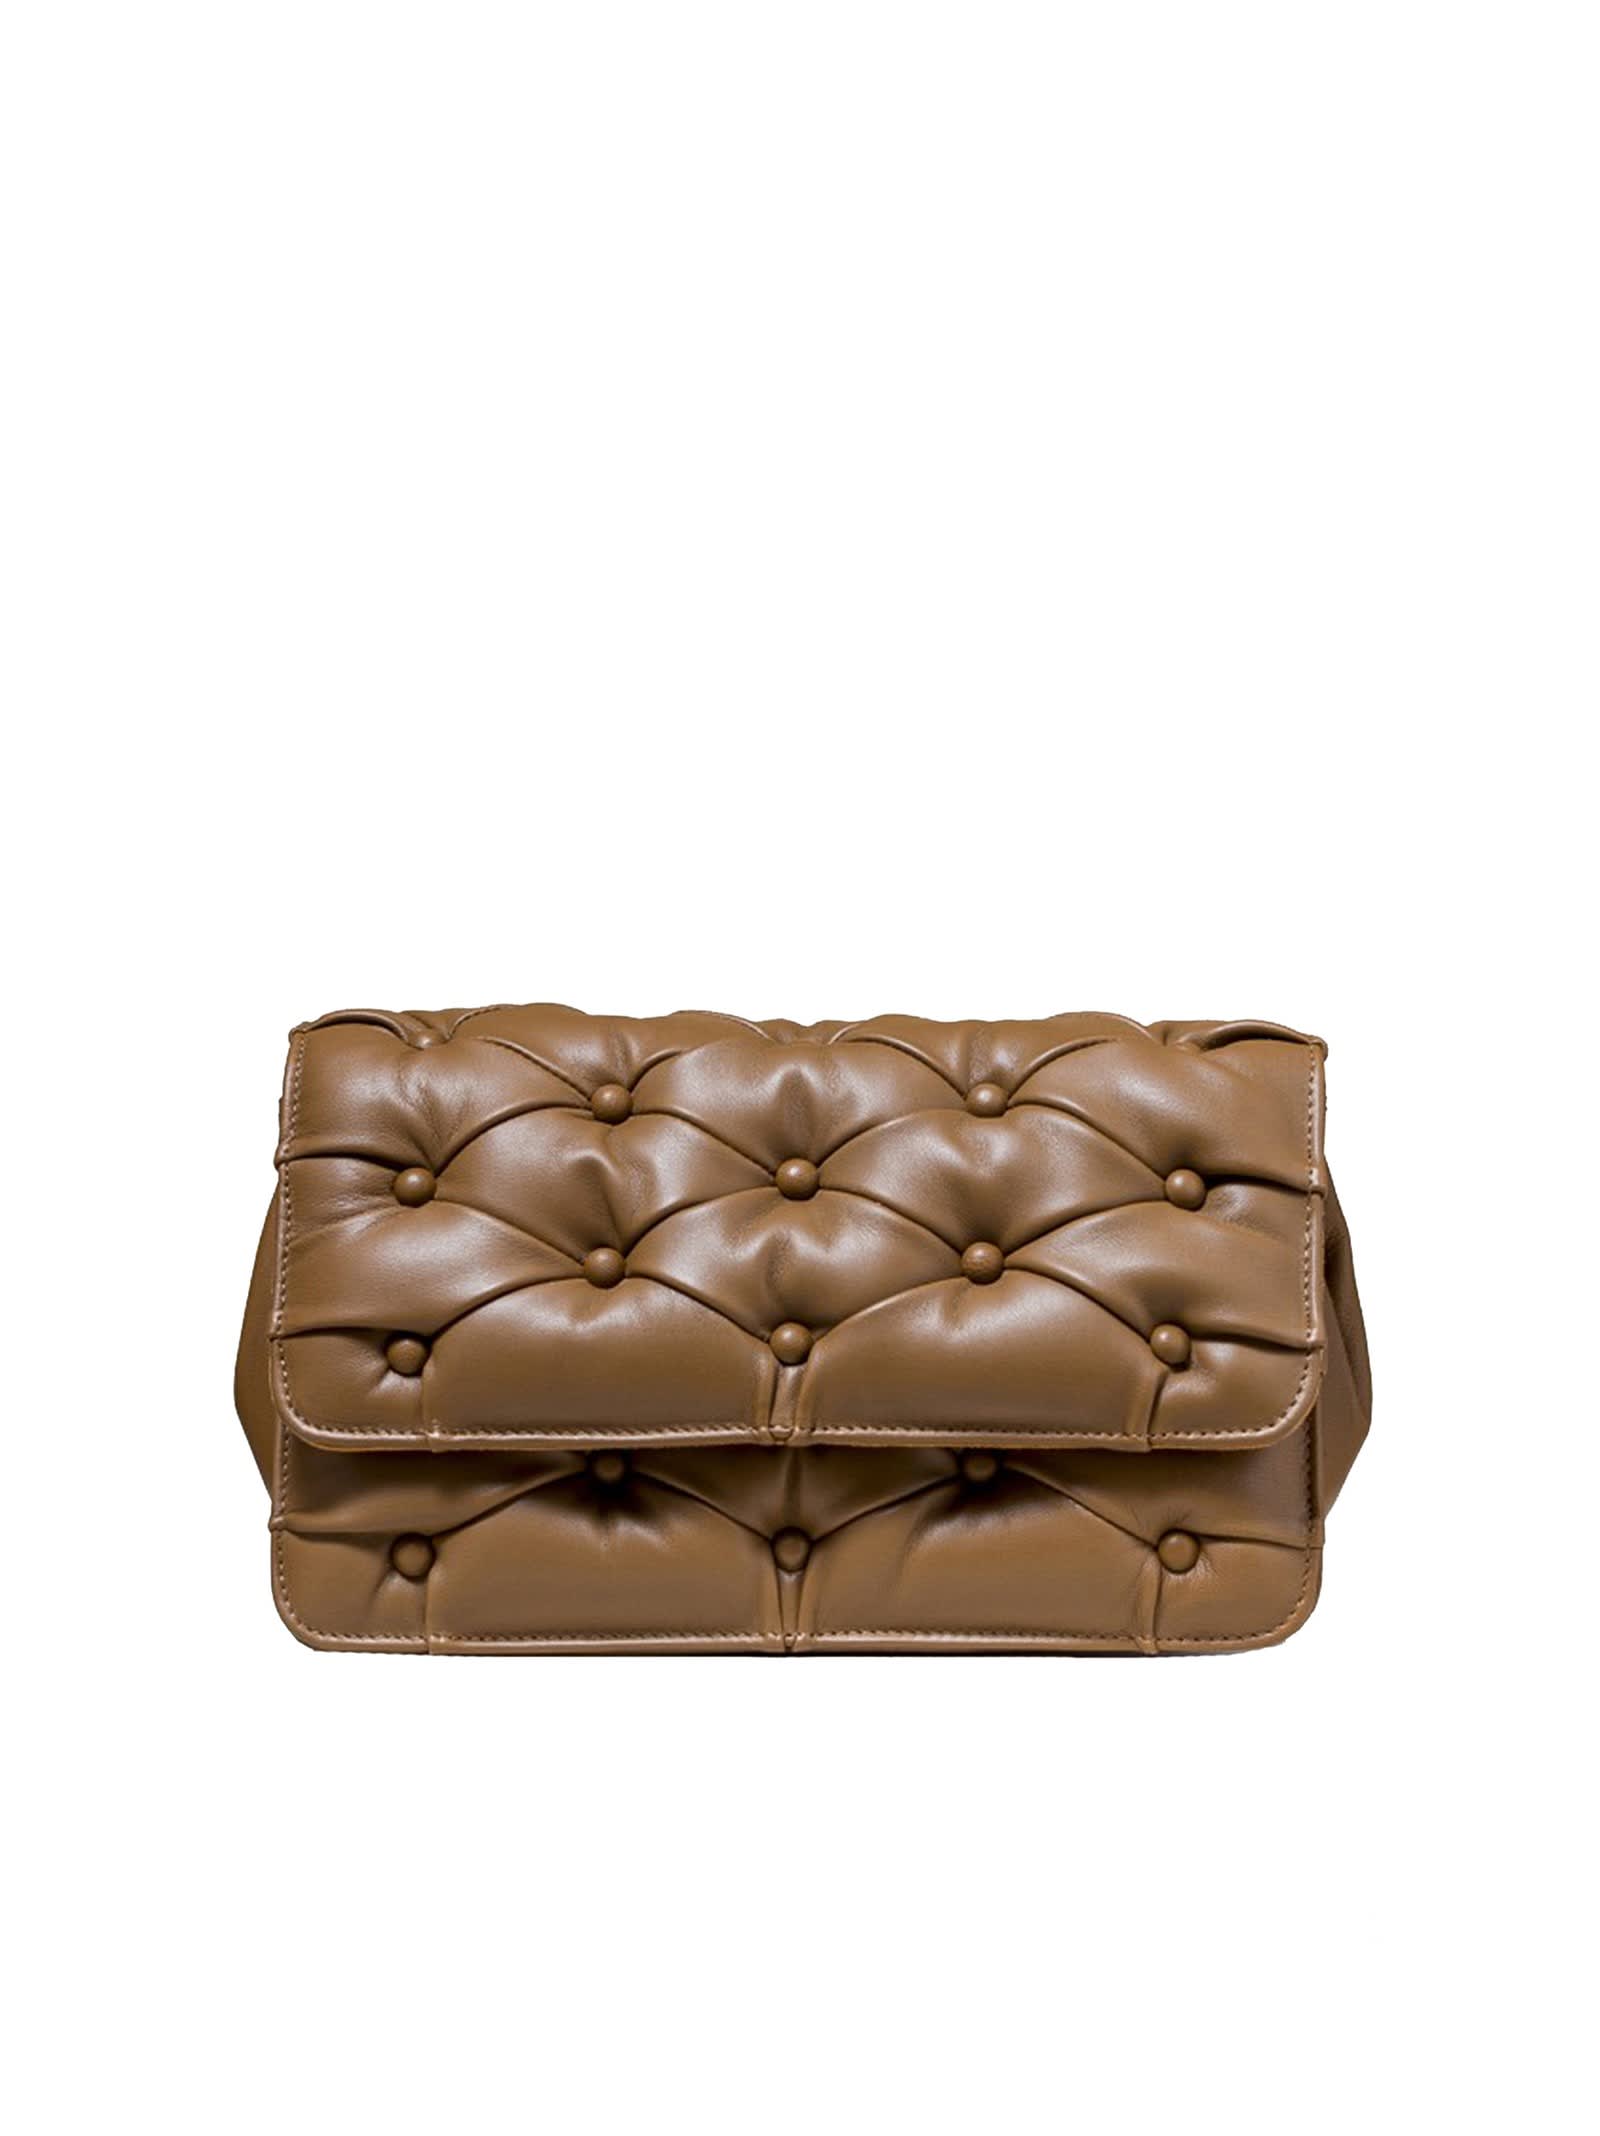 Benedetta Bruzziches 4585 Brown Leather Carmen Clutch Bag